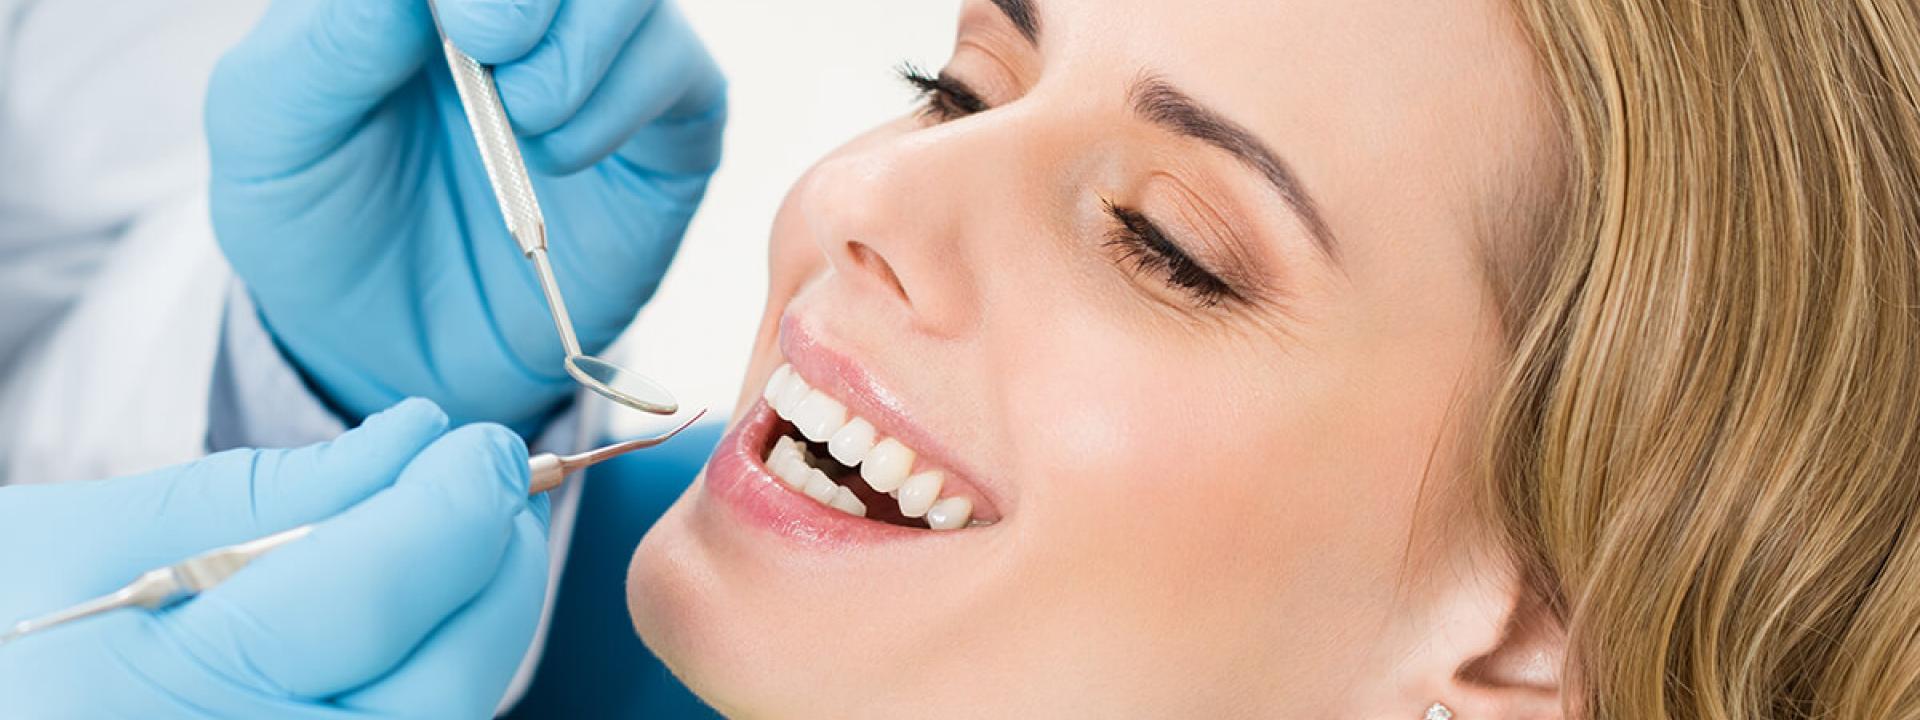 Regular dental visit